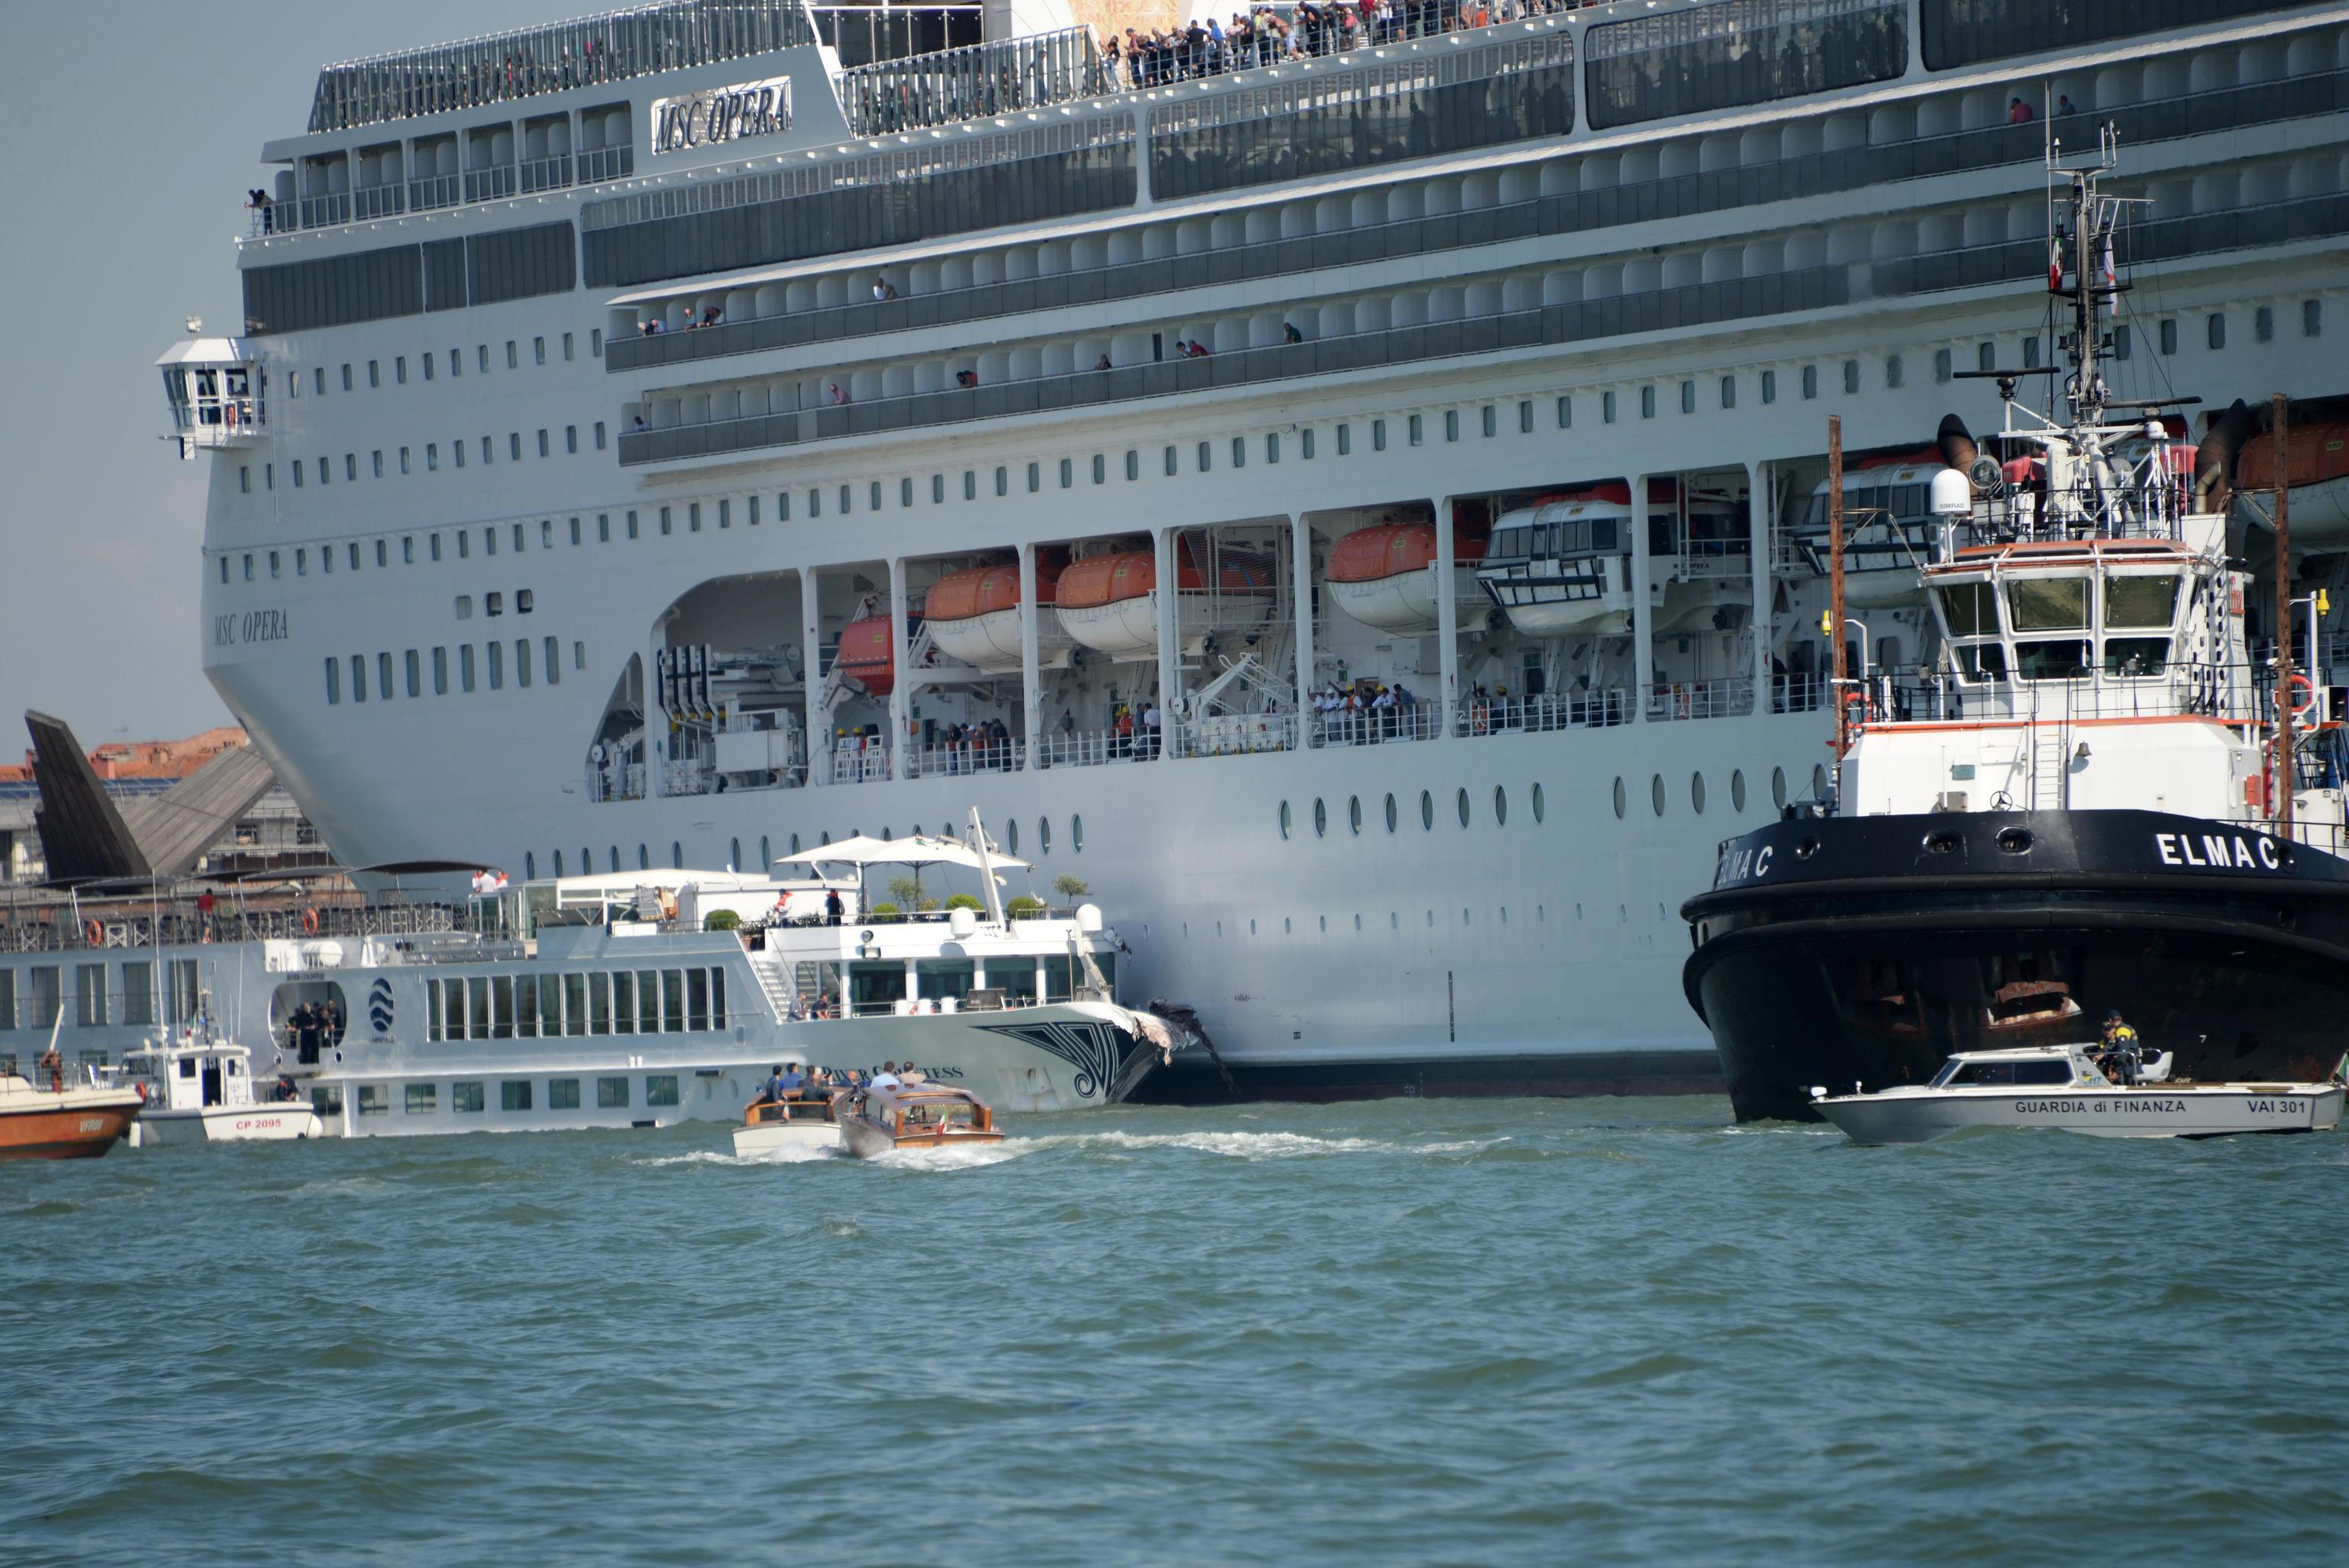 Crucero choca con barco turístico en Venecia; hay cuatro heridos